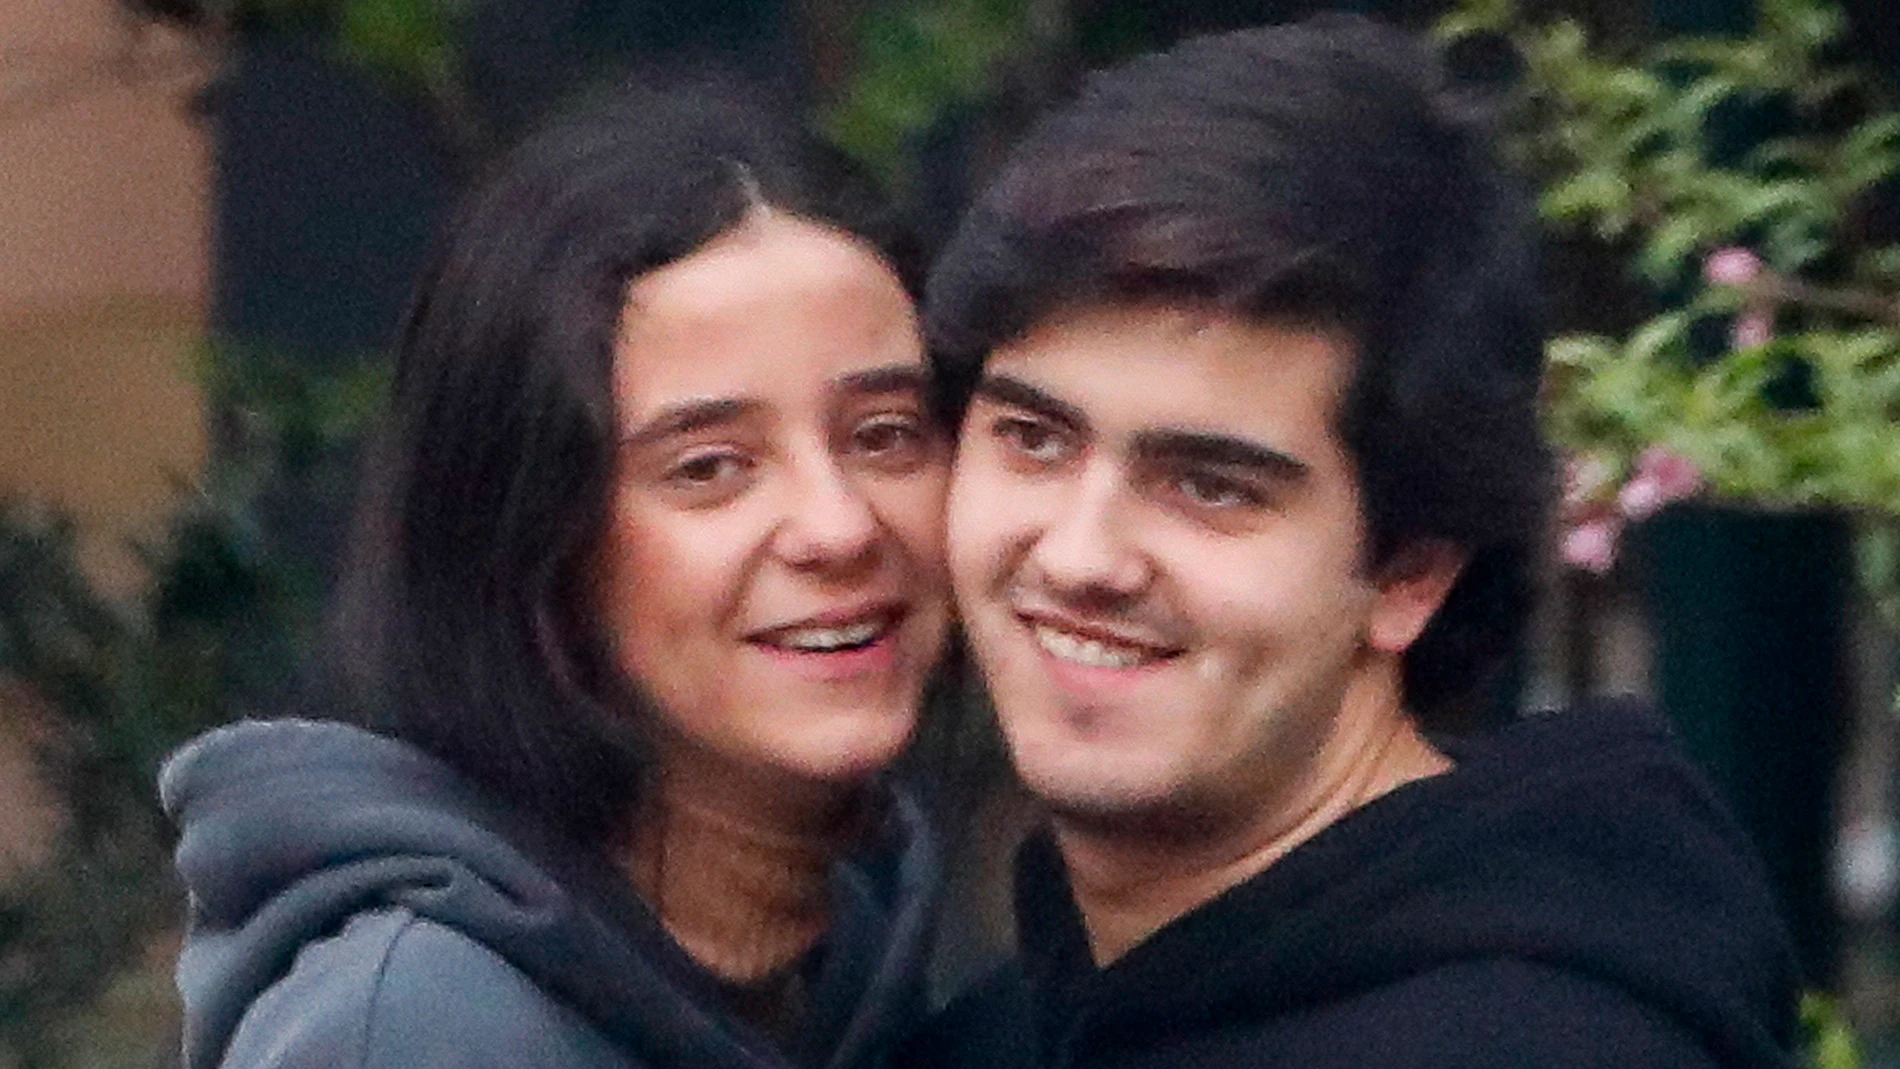 Victoria Federica y Jorge Bárcenas se van a vivir juntos